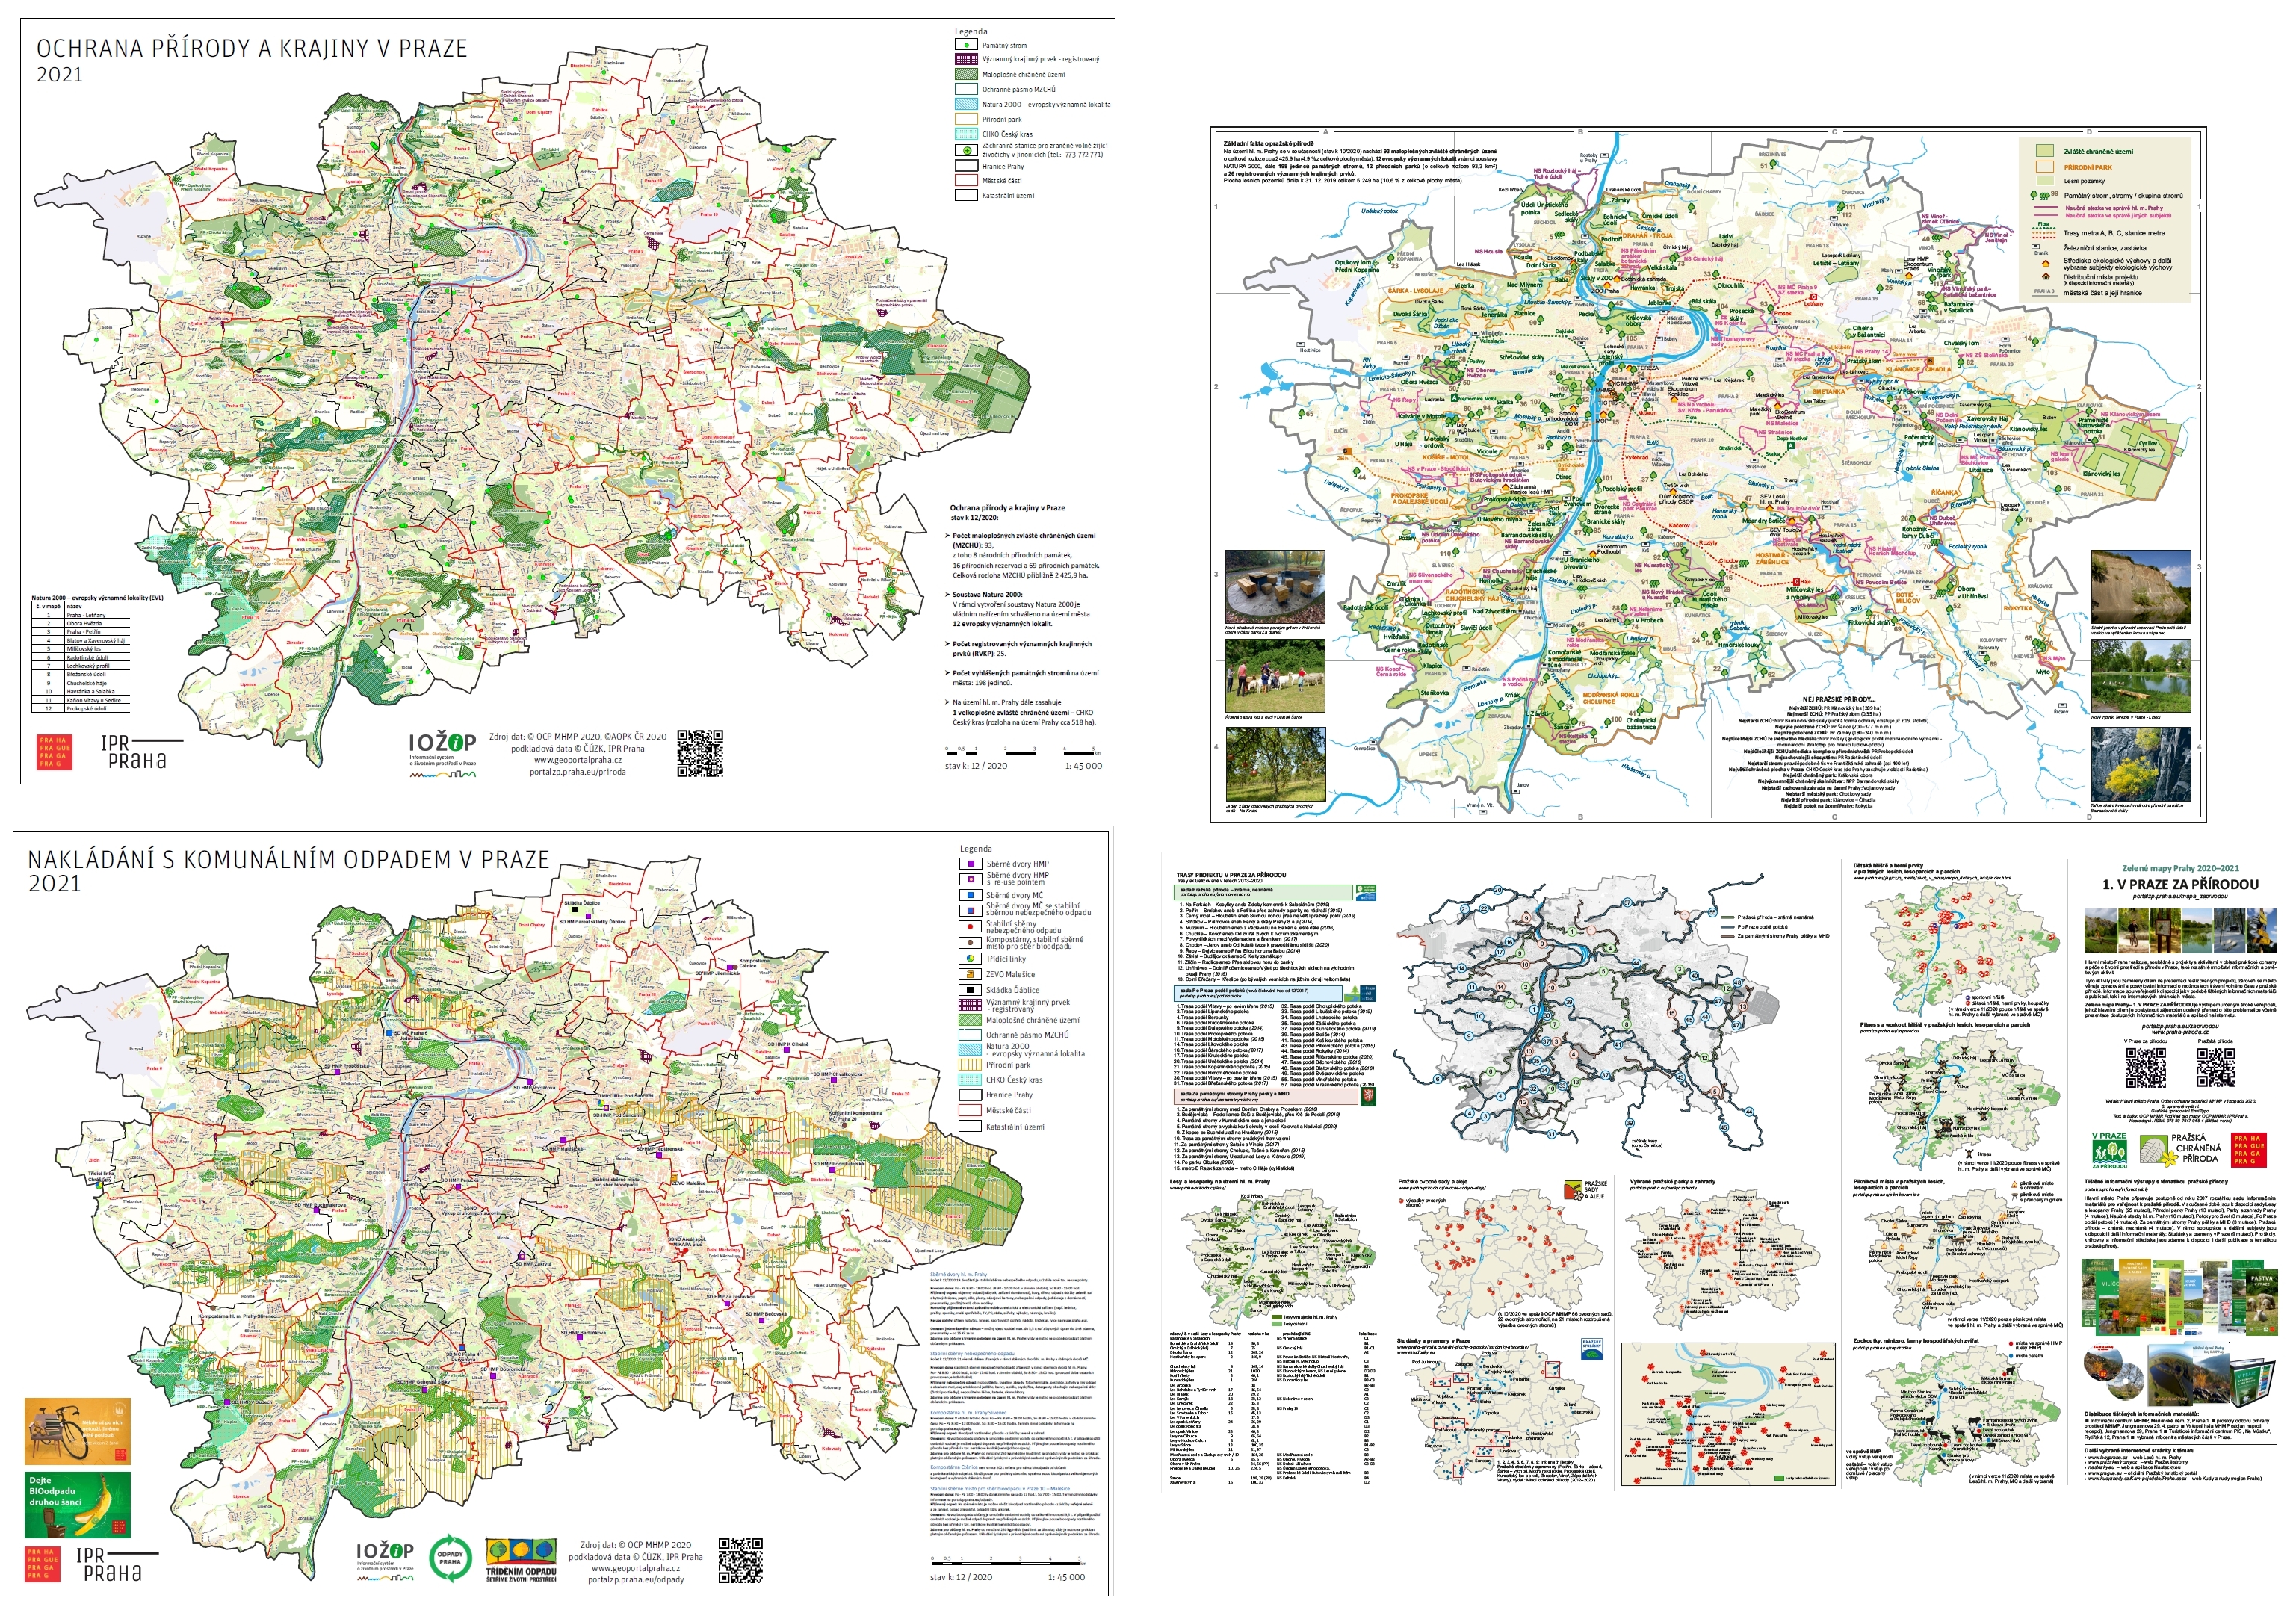 3249404_mapové informační materiály k problematice životního prostředí a pražské přírody, 2021, ilustr. obr.